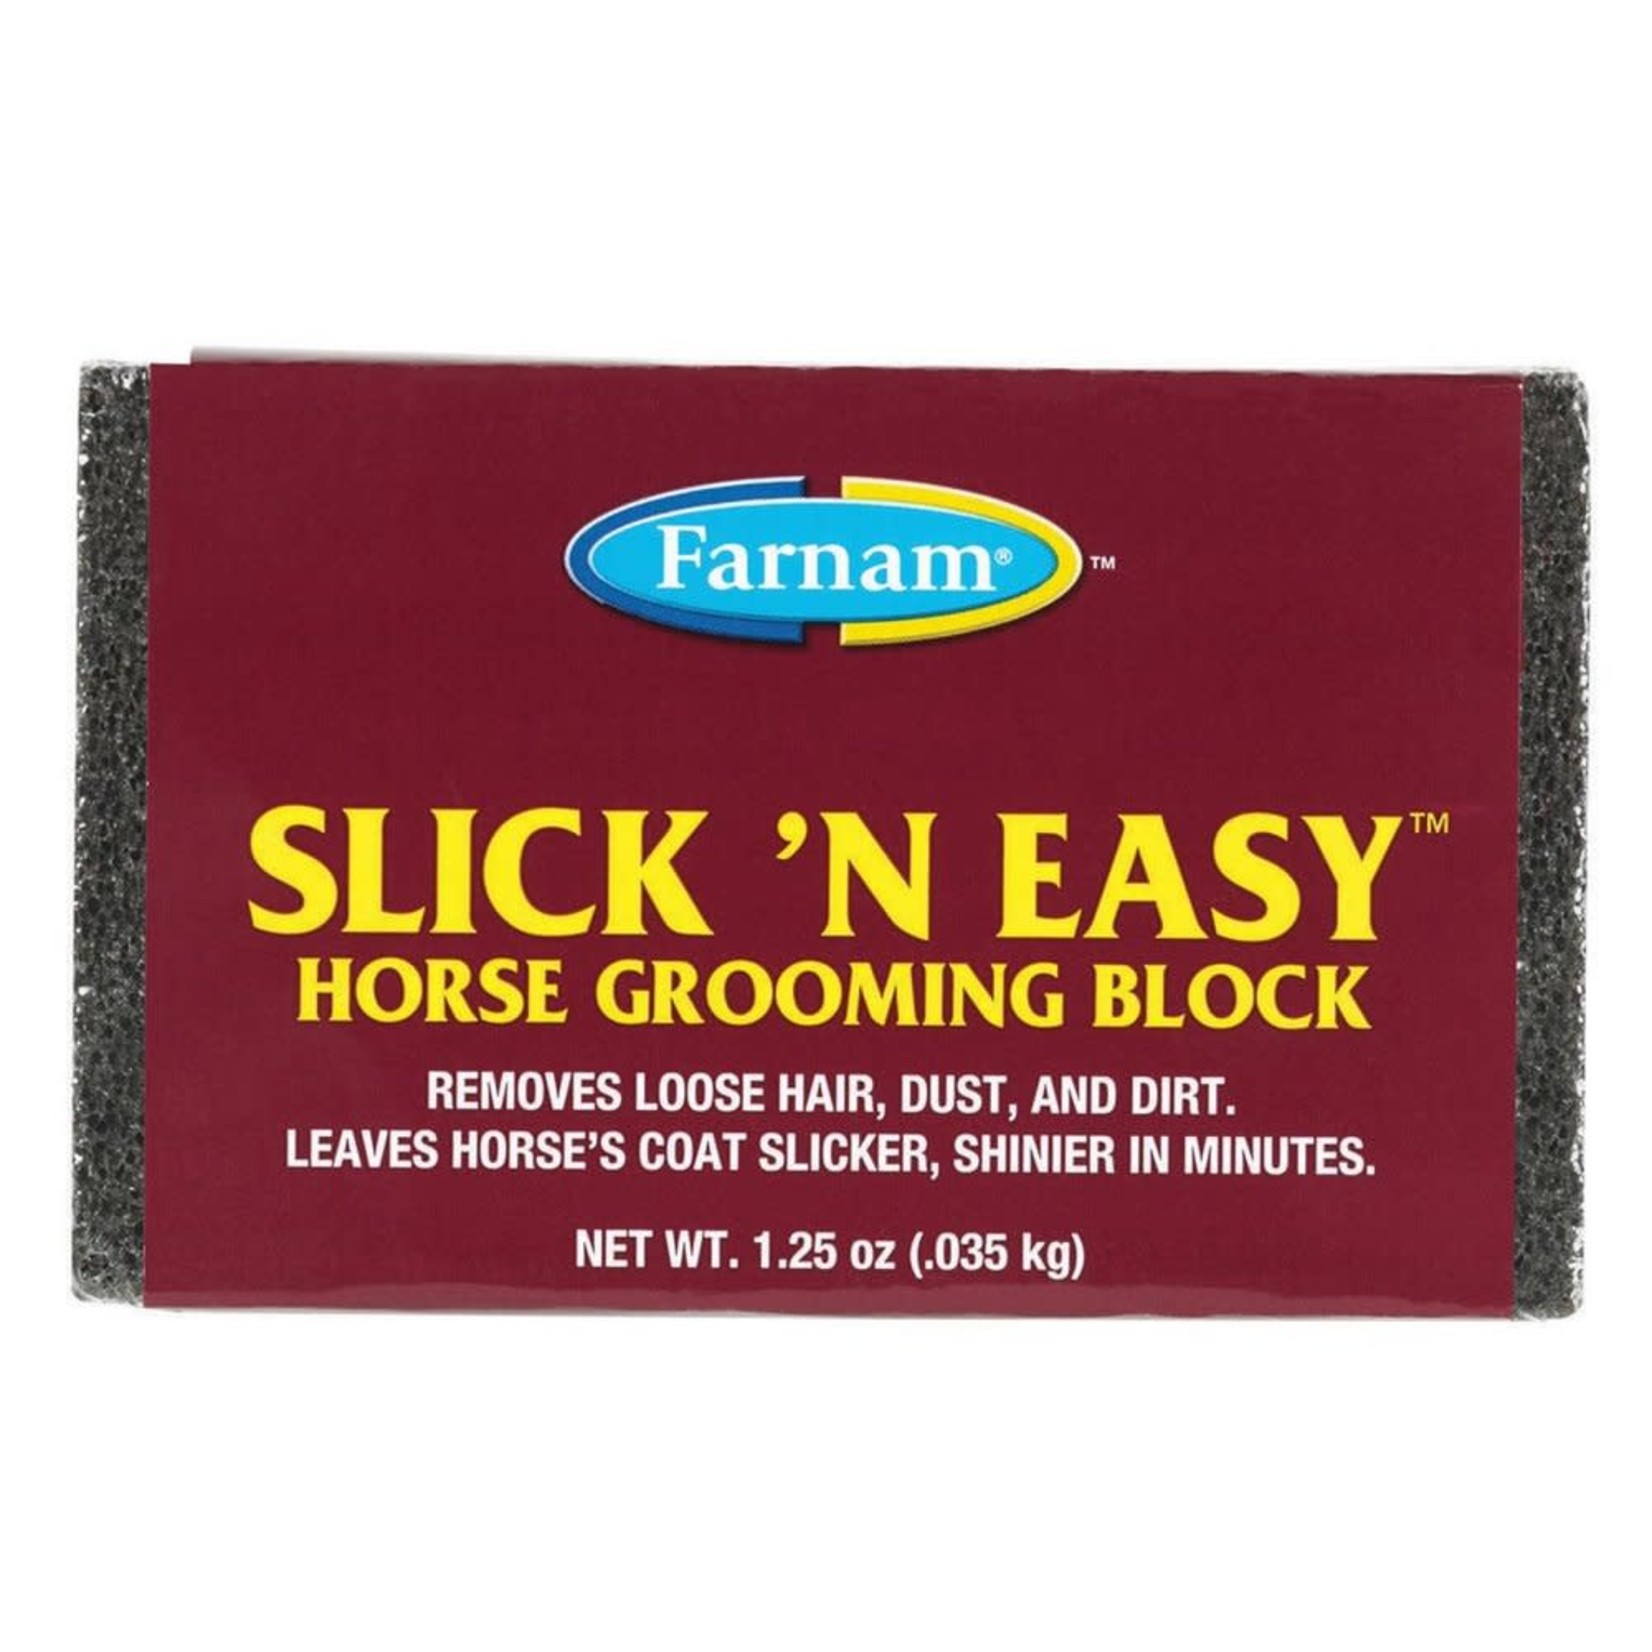 Slick N Easy Grooming block